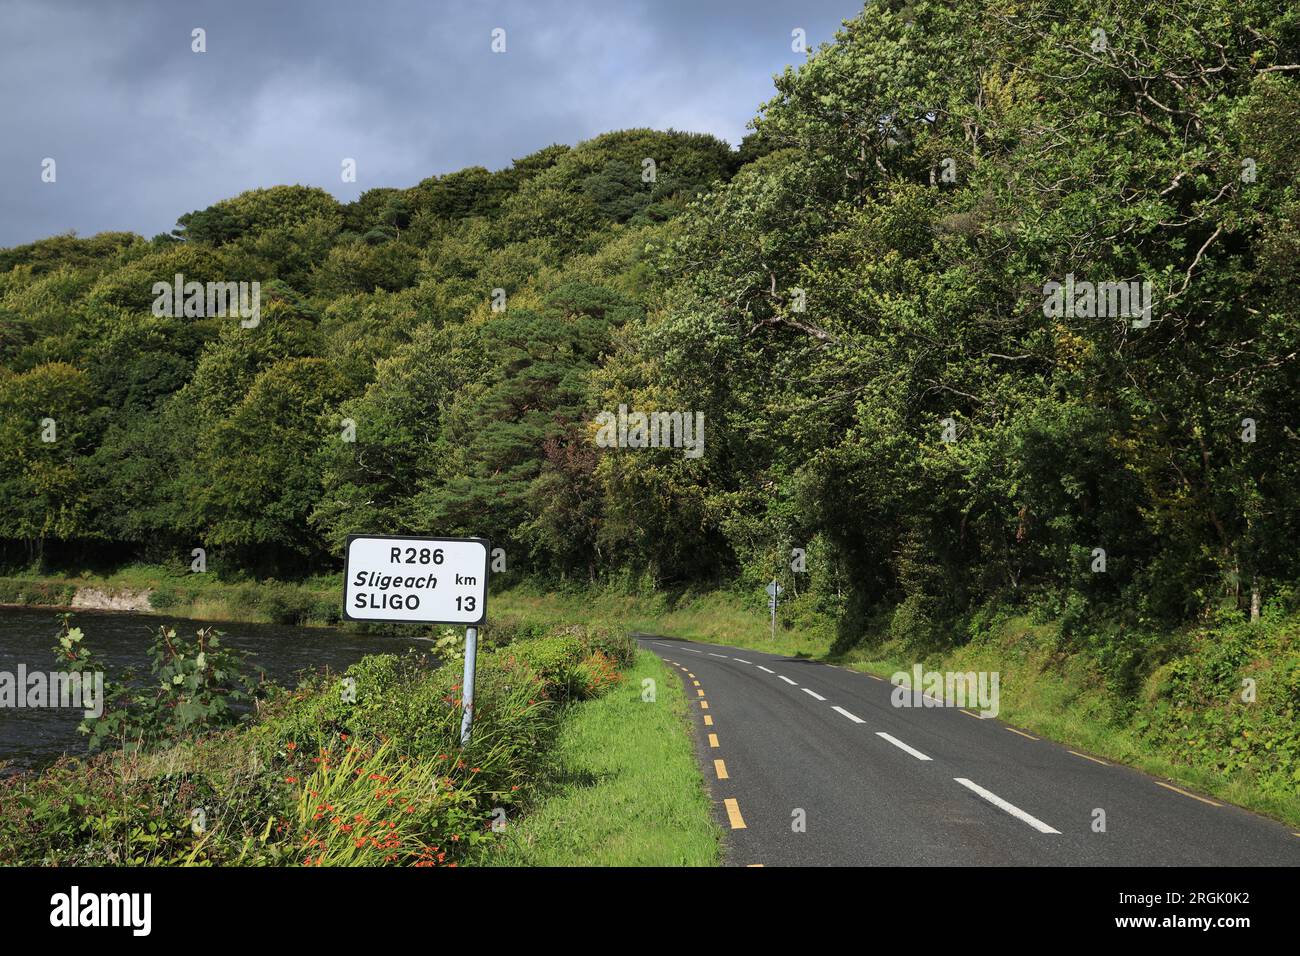 Landschaft mit einer Straße, die von einem See und Bäumen in Laub begrenzt wird, mit zweisprachigen Straßenschildern, die im ländlichen County Leitrim, Irland, zu sehen sind Stockfoto